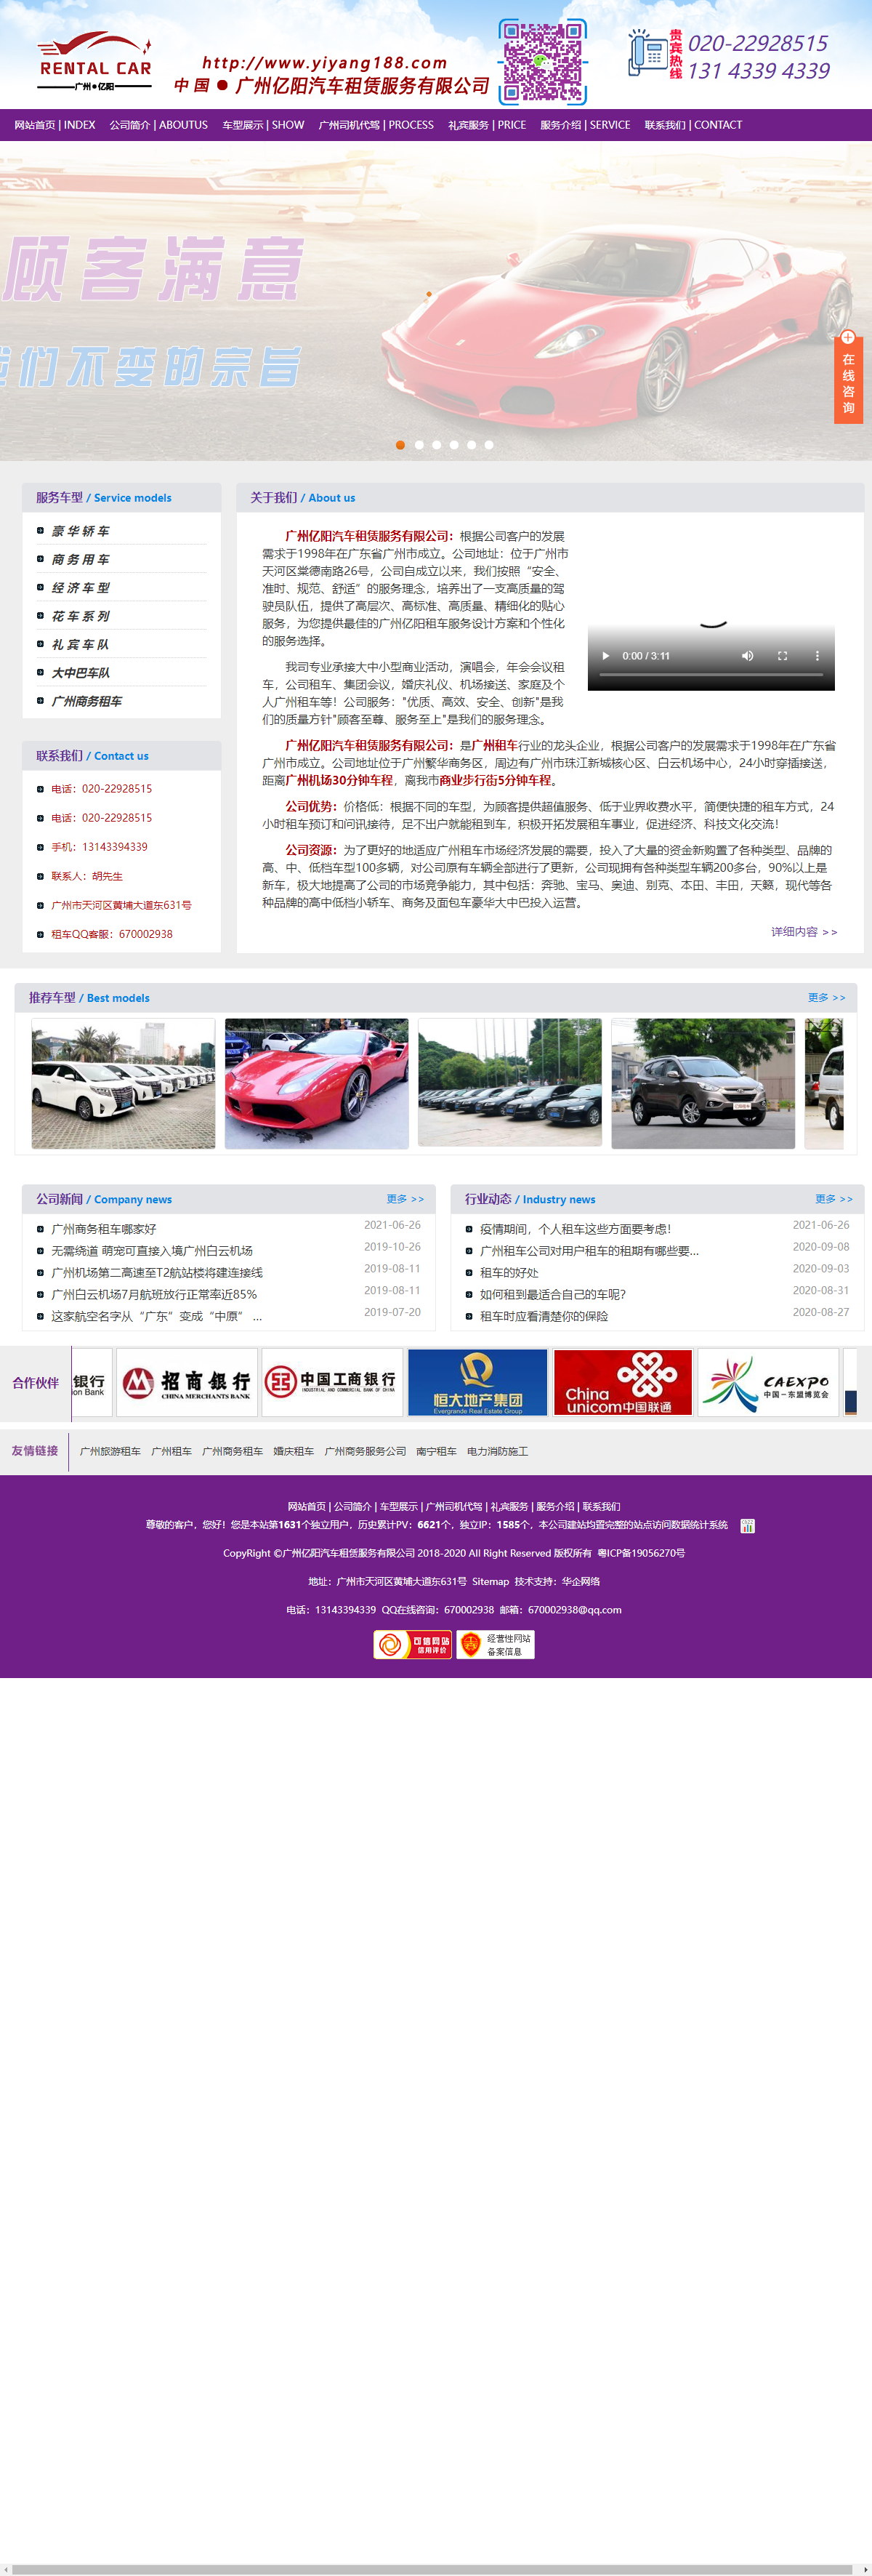 广州亿阳汽车租赁服务有限公司网站案例